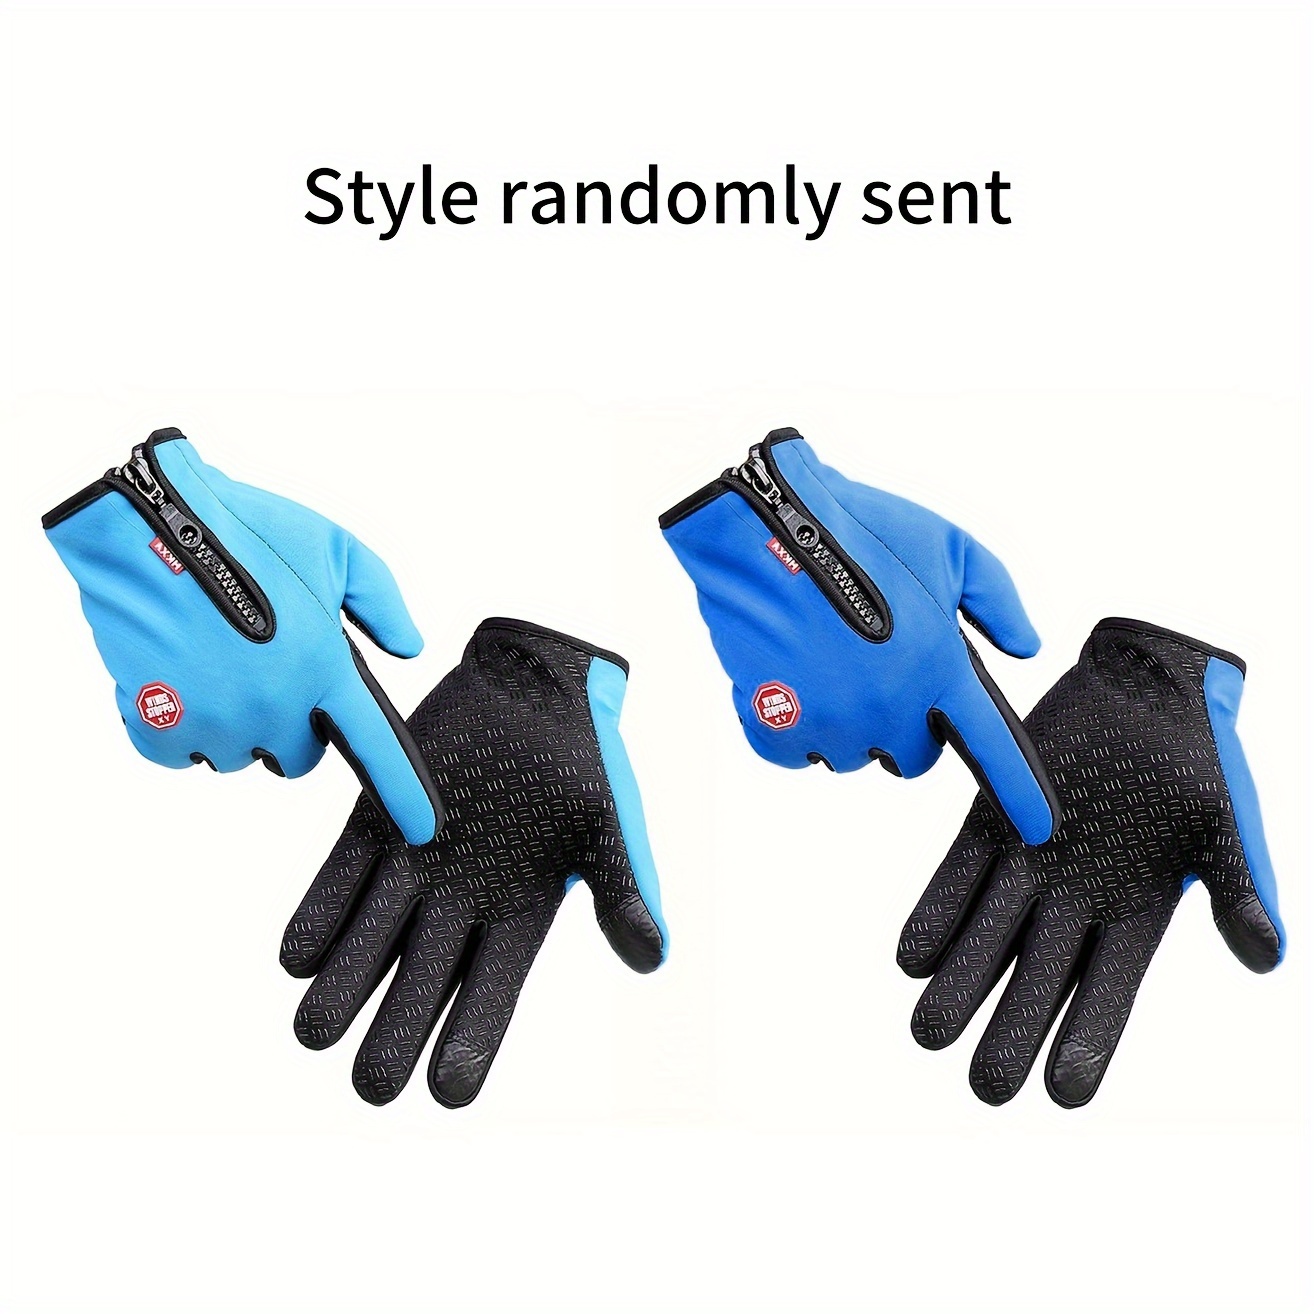 winter warm gloves best sellers windproof waterproof warm touch screen gloves cycling gloves for women men